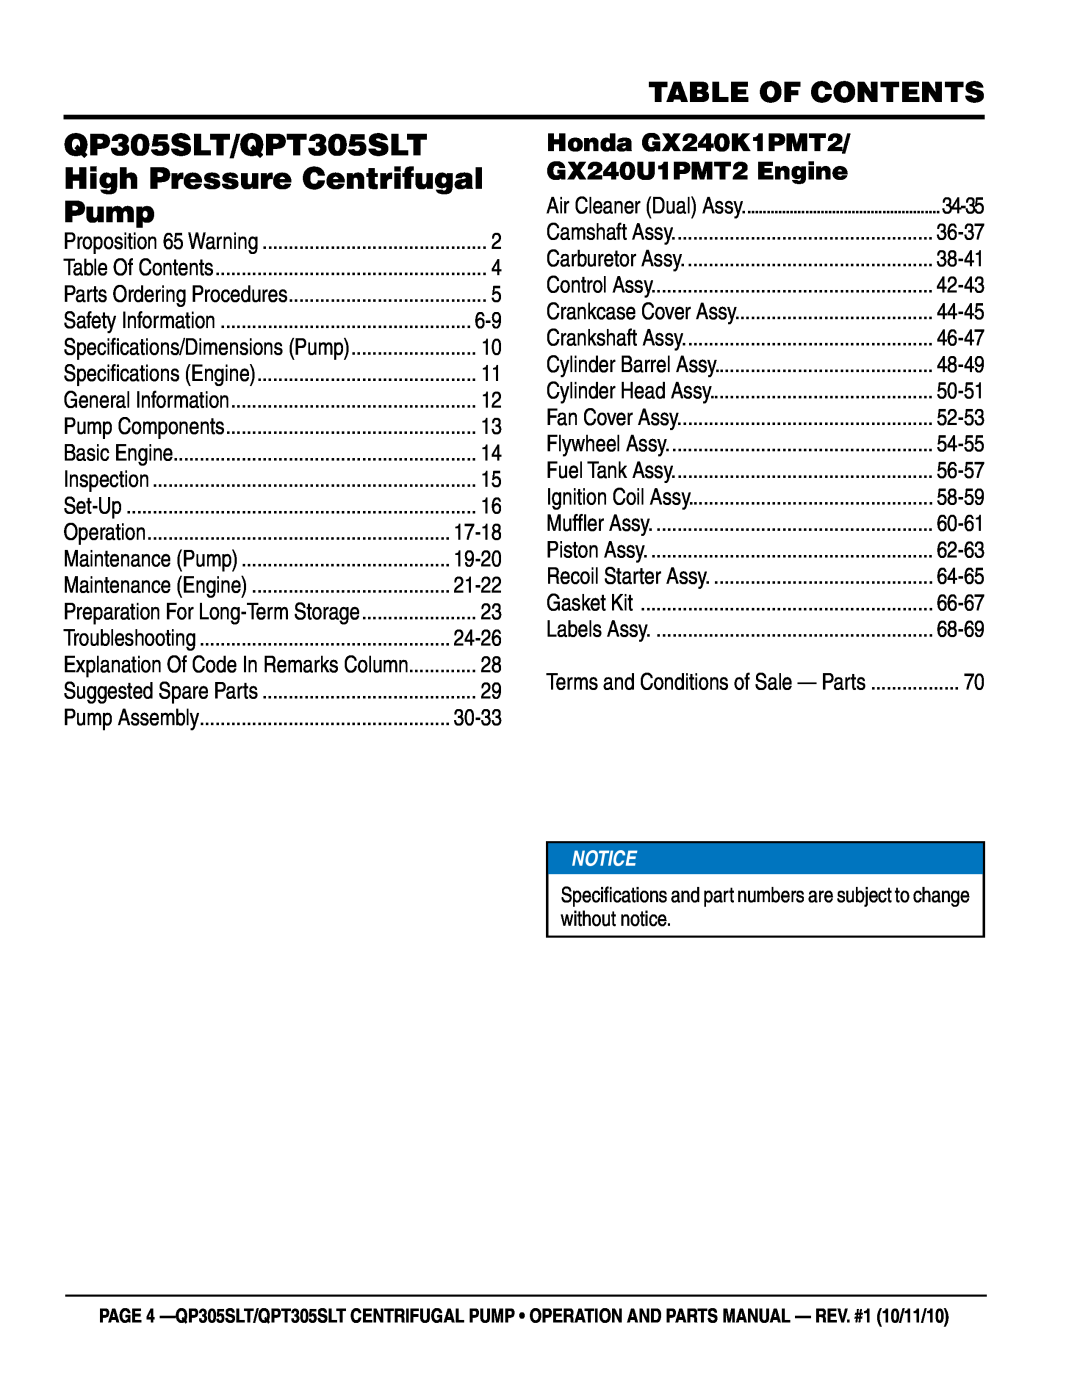 Multiquip Table of Contents, Honda GX240K1PMT2, GX240U1PMT2 Engine, QP305SLT/QPT305SLT, High Pressure Centrifugal, Pump 